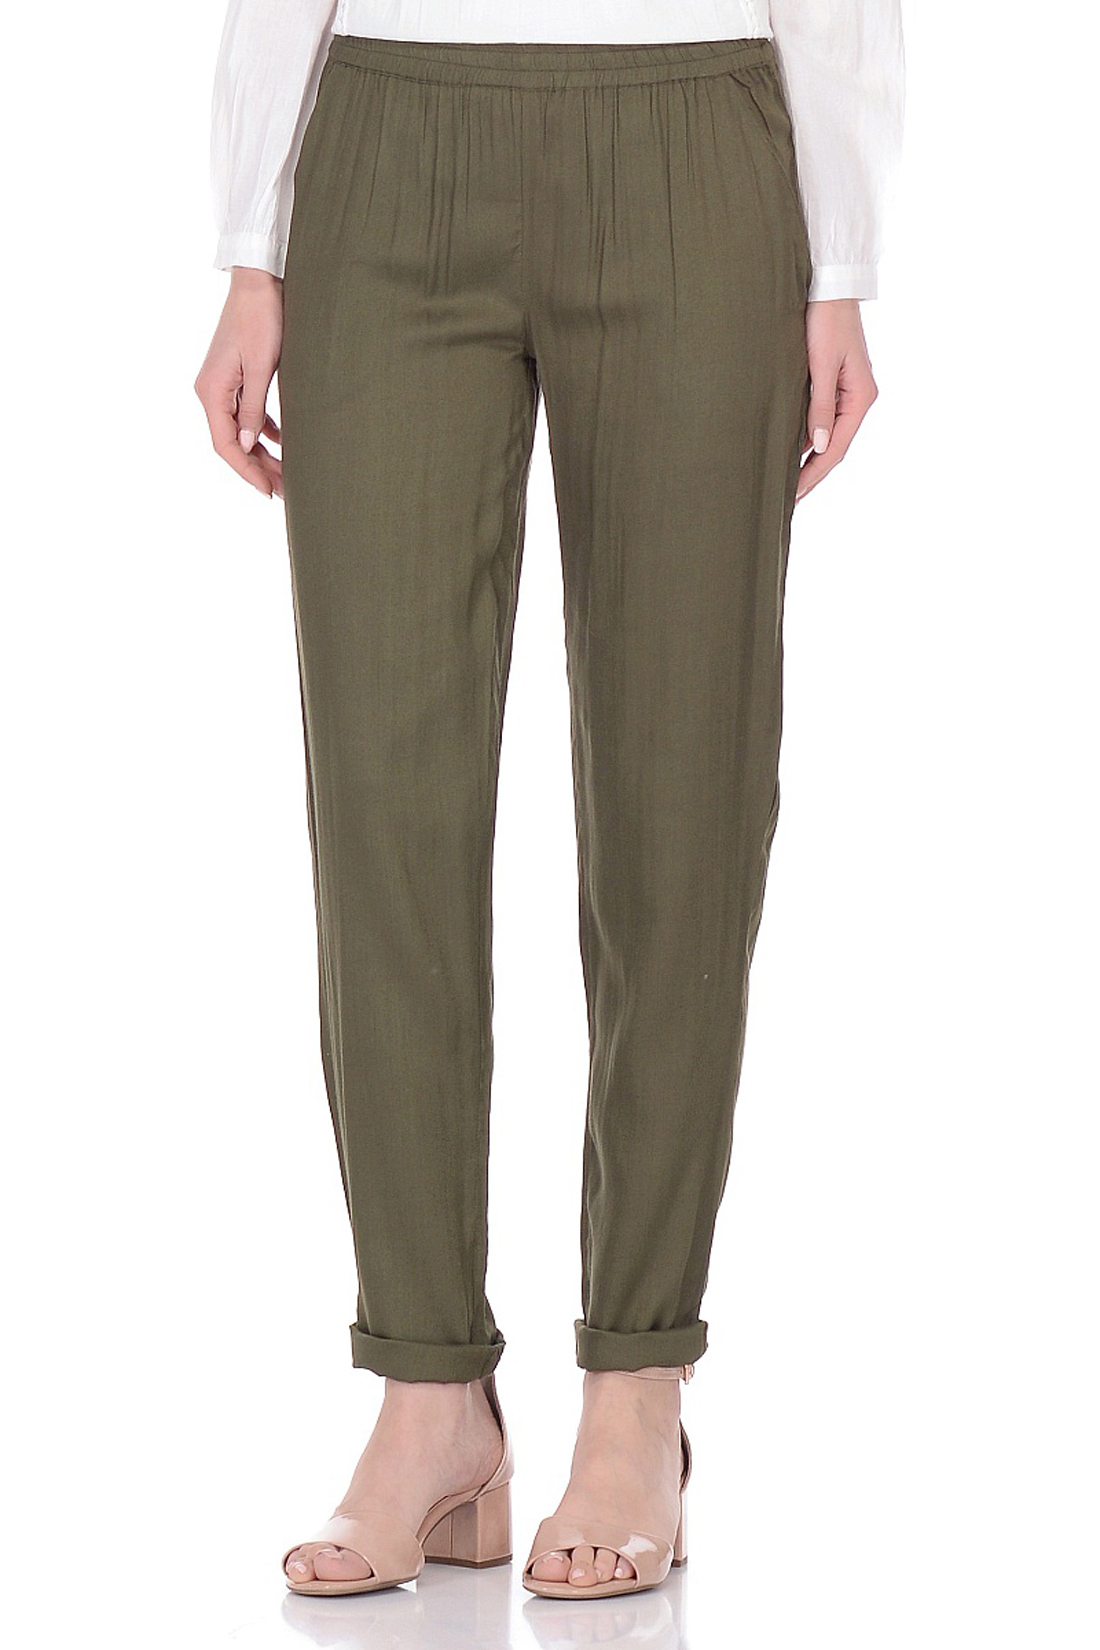 Зауженные брюки из вискозы (арт. baon B298047), размер XL, цвет зеленый Зауженные брюки из вискозы (арт. baon B298047) - фото 1